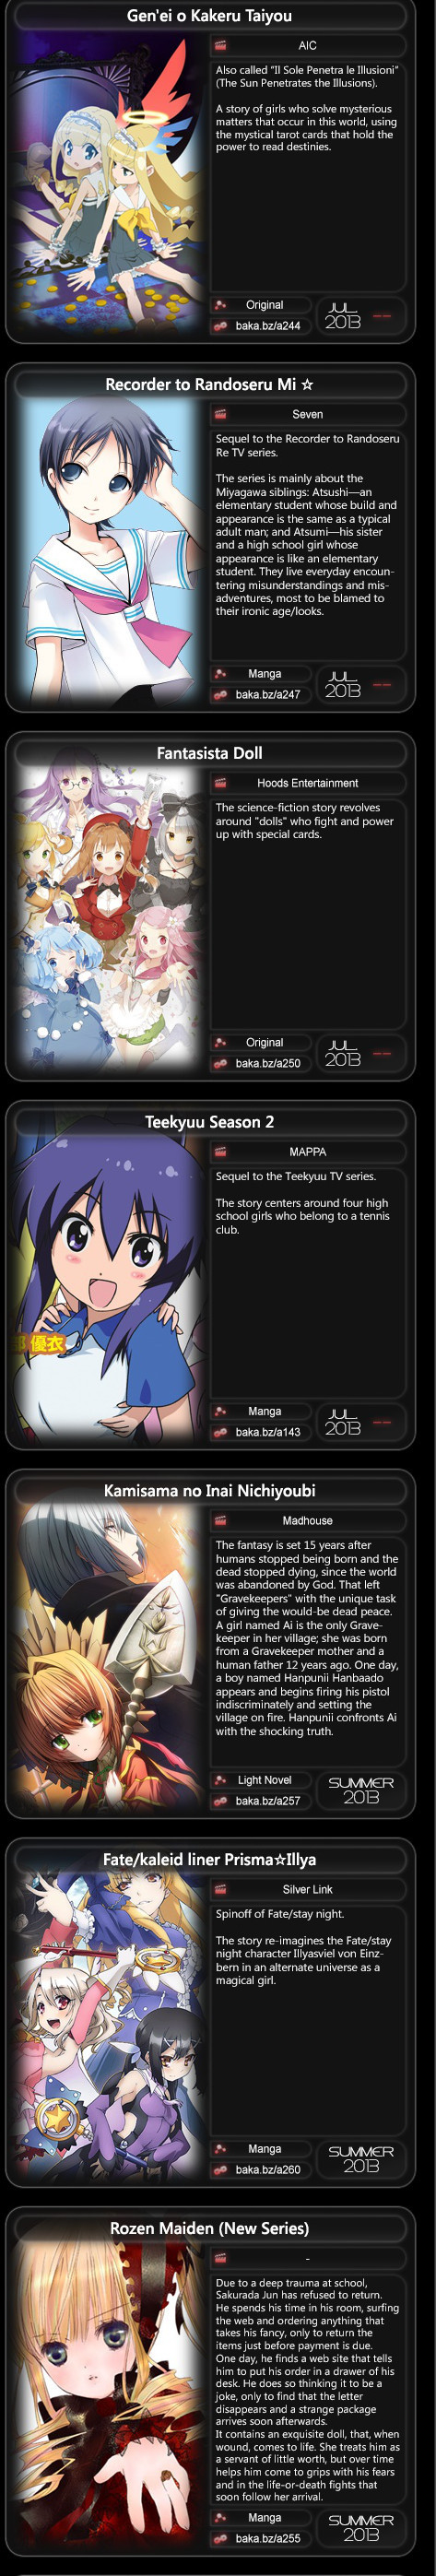 2013 yaz sezonu animeler -http://img1.ak.crunchyroll.com/i/spire1/2ef7f581d09579f3129bd9fdaf460ba01365780168_full.jpg